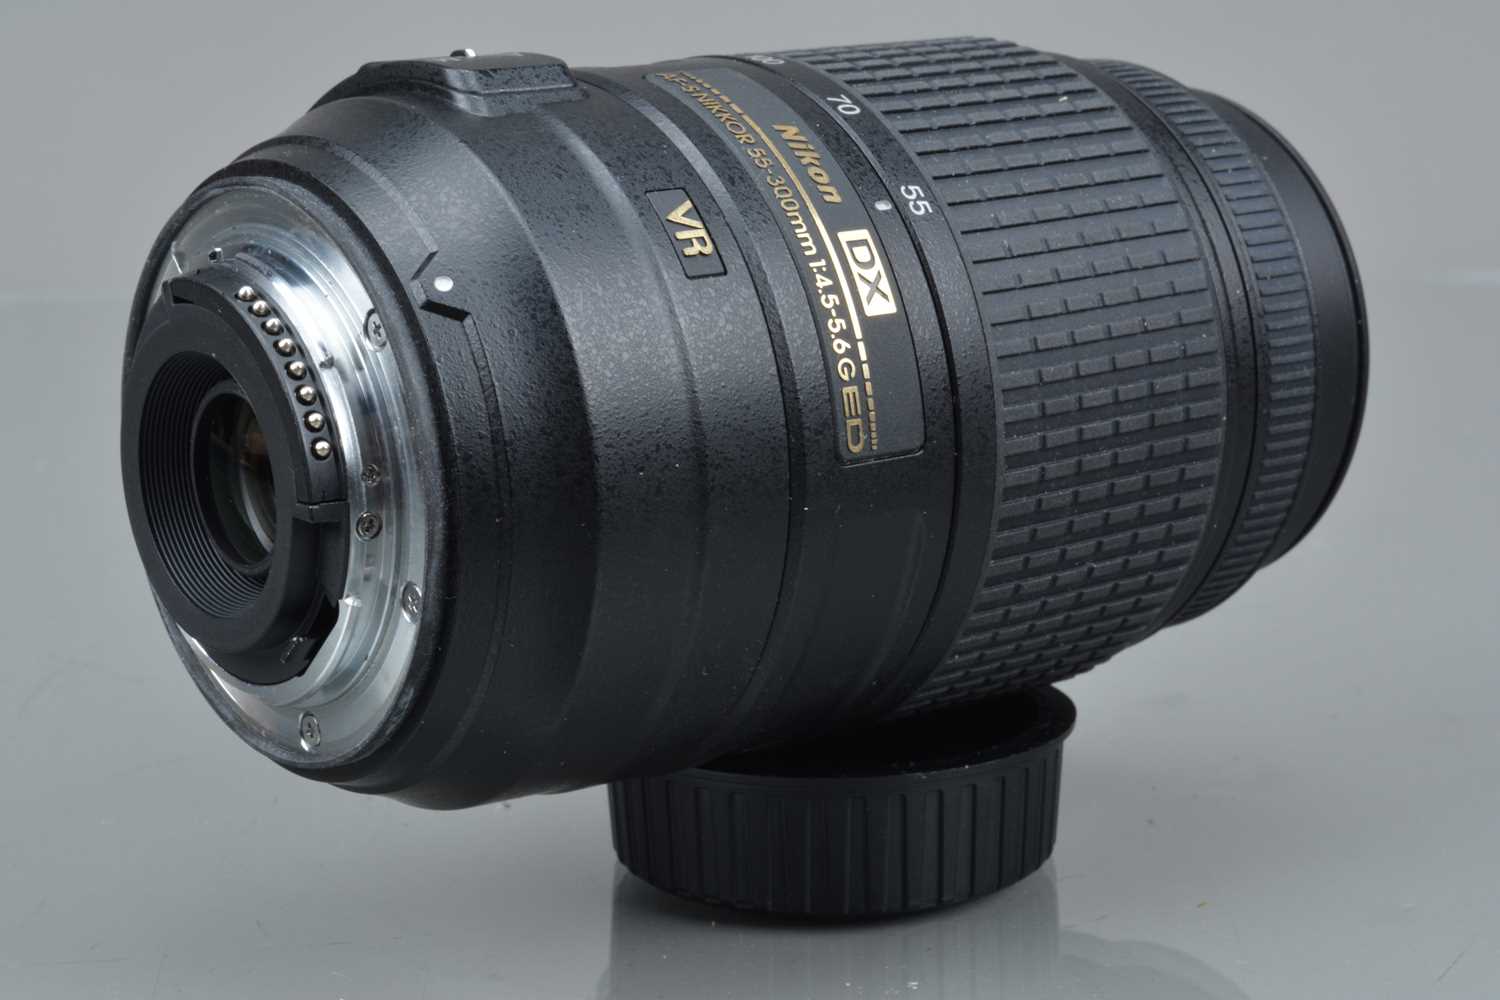 A Nikon AF-S DX Nikkor 55-300mm f/4.5-5.6G ED VR Lens, - Image 2 of 2